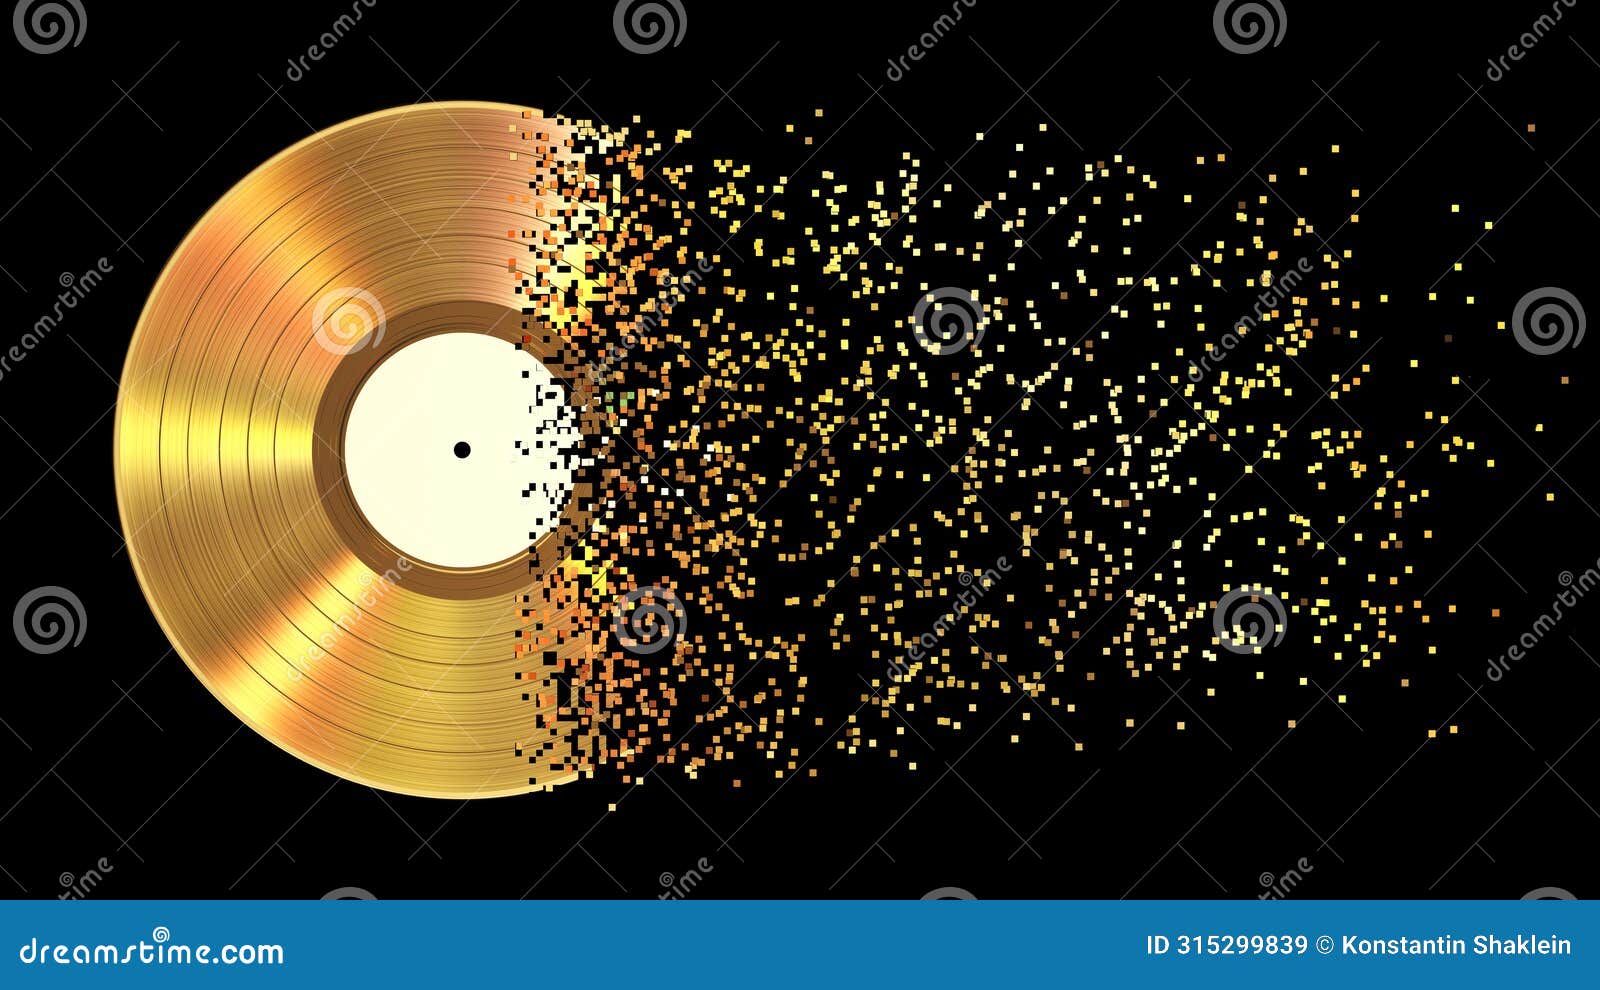 iridescent gold vinyl disk crumbles into pixels